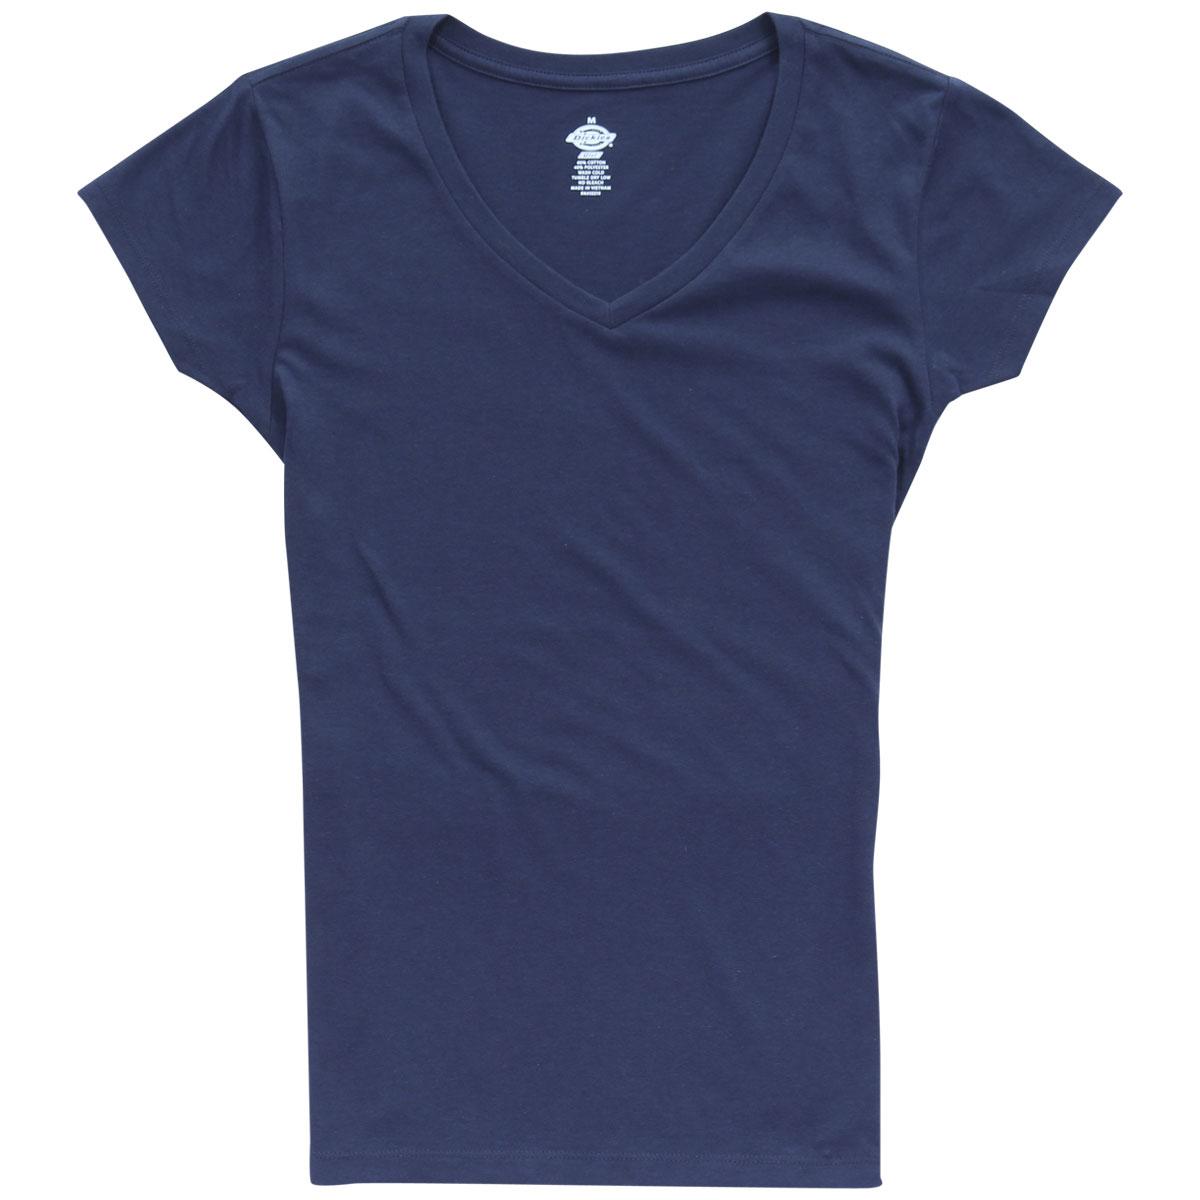 Dickies Girl Junior's Slim Fit Short Sleeve V Neck T Shirt - Navy - Small